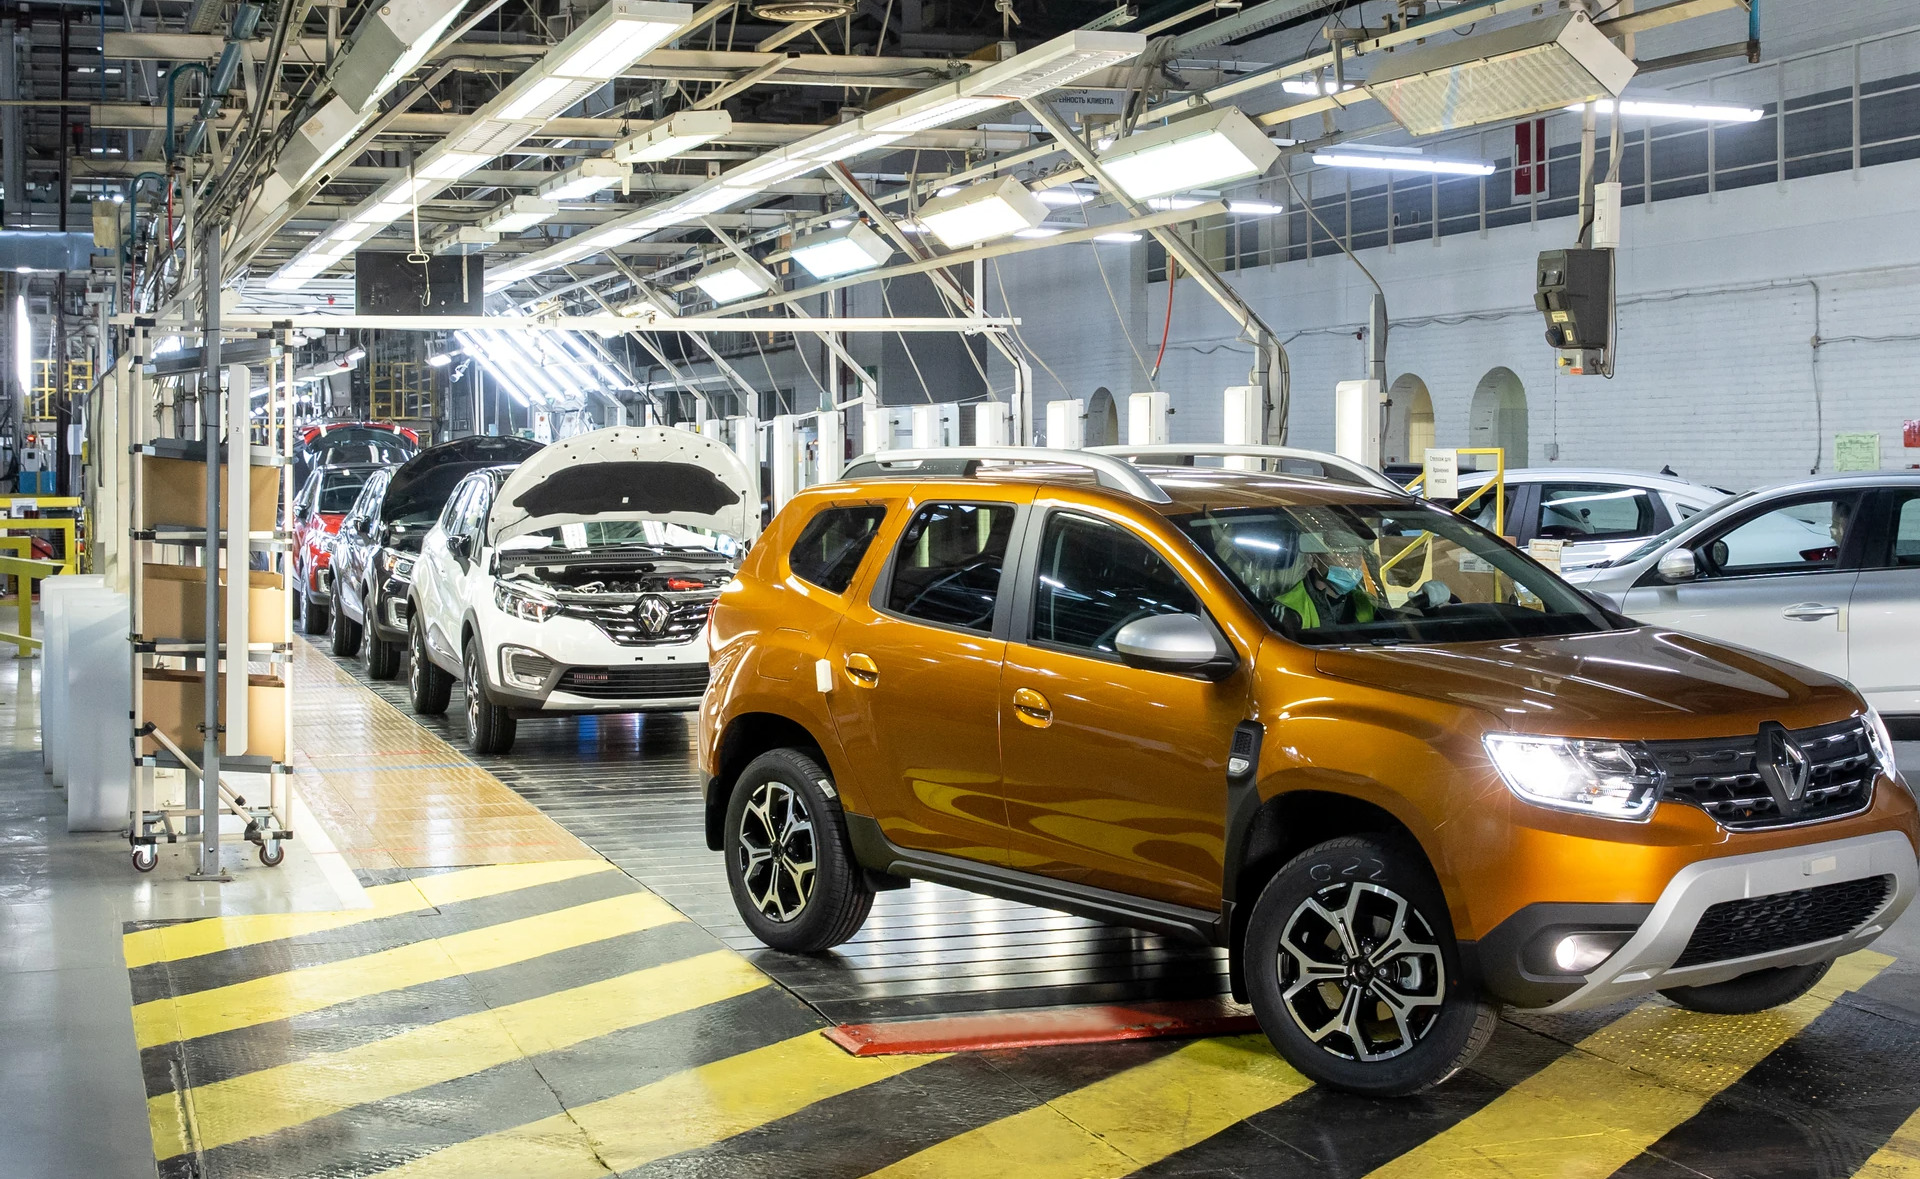 Prancūzijos automobilių gamintoja „Renault“ pardavė savo turtą Rusijos vyriausybei, pirmadienį pranešė abi pusės, nes Maskvai vykdant karo veiksmus Ukrainoje užsienio bendrovės palieka šalį.